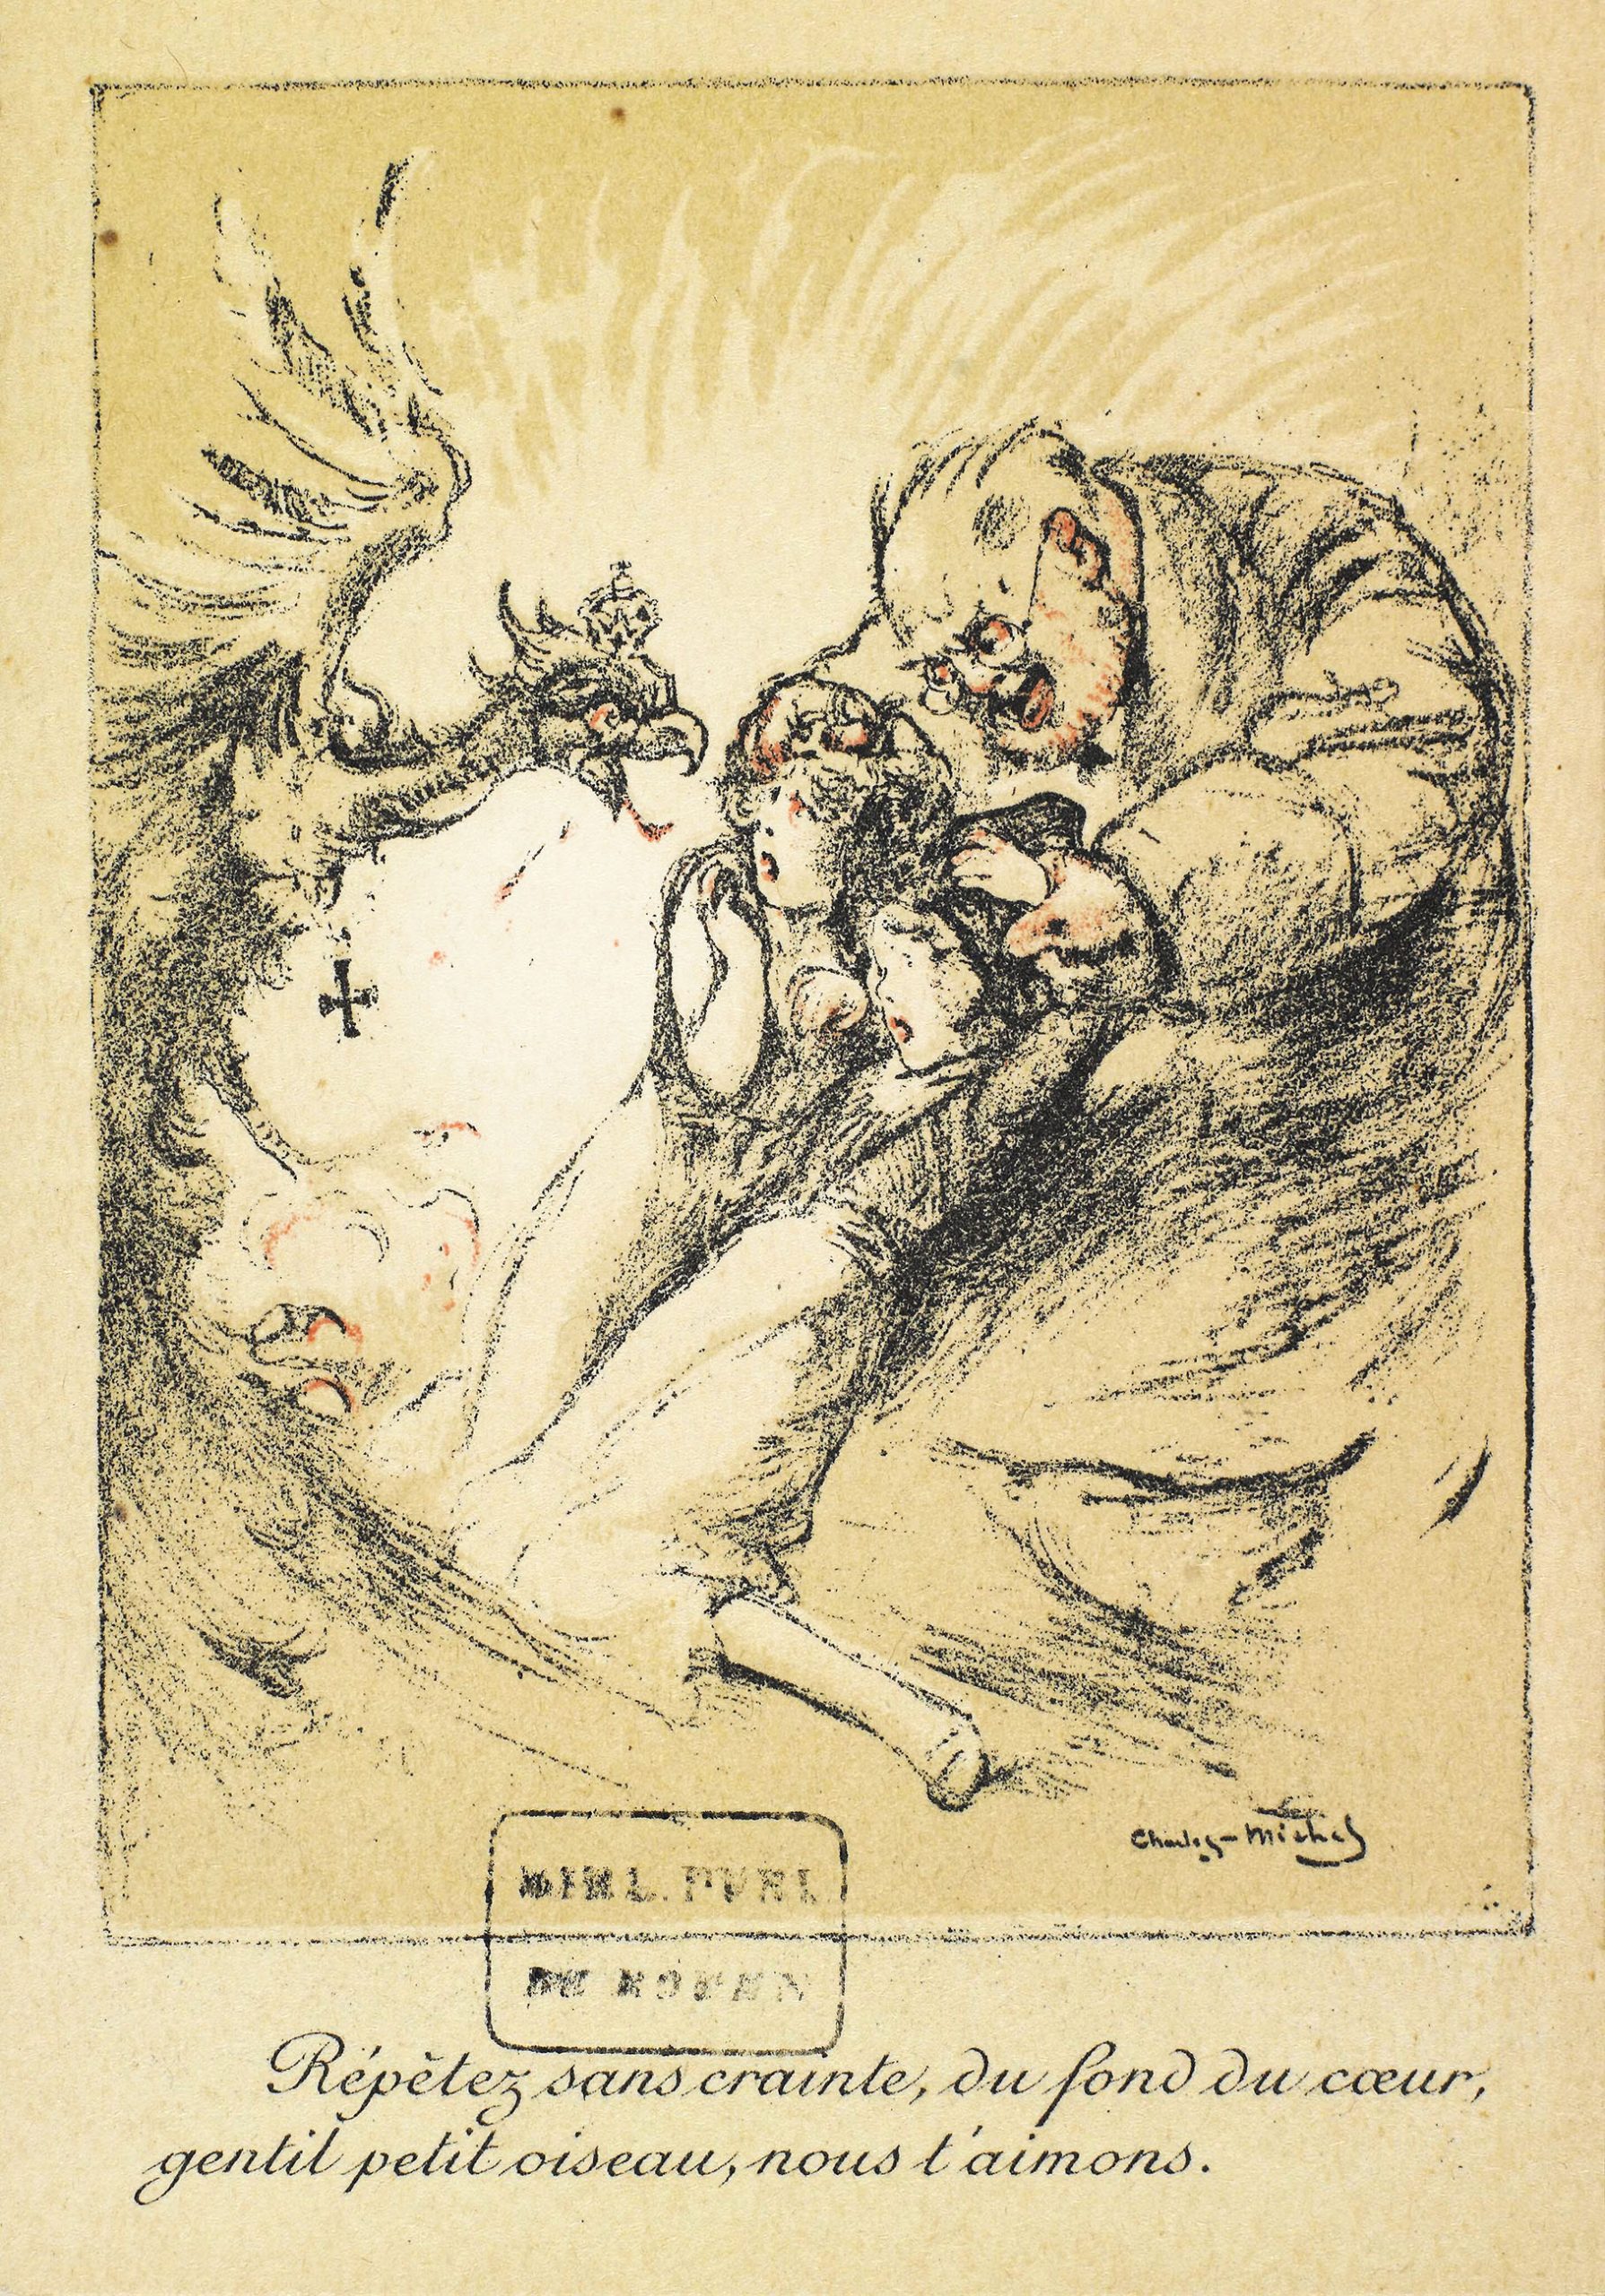 Dessin de Propagande antiallemande durant la guerre  par  Charles Michel,  1918 - ©Gallica